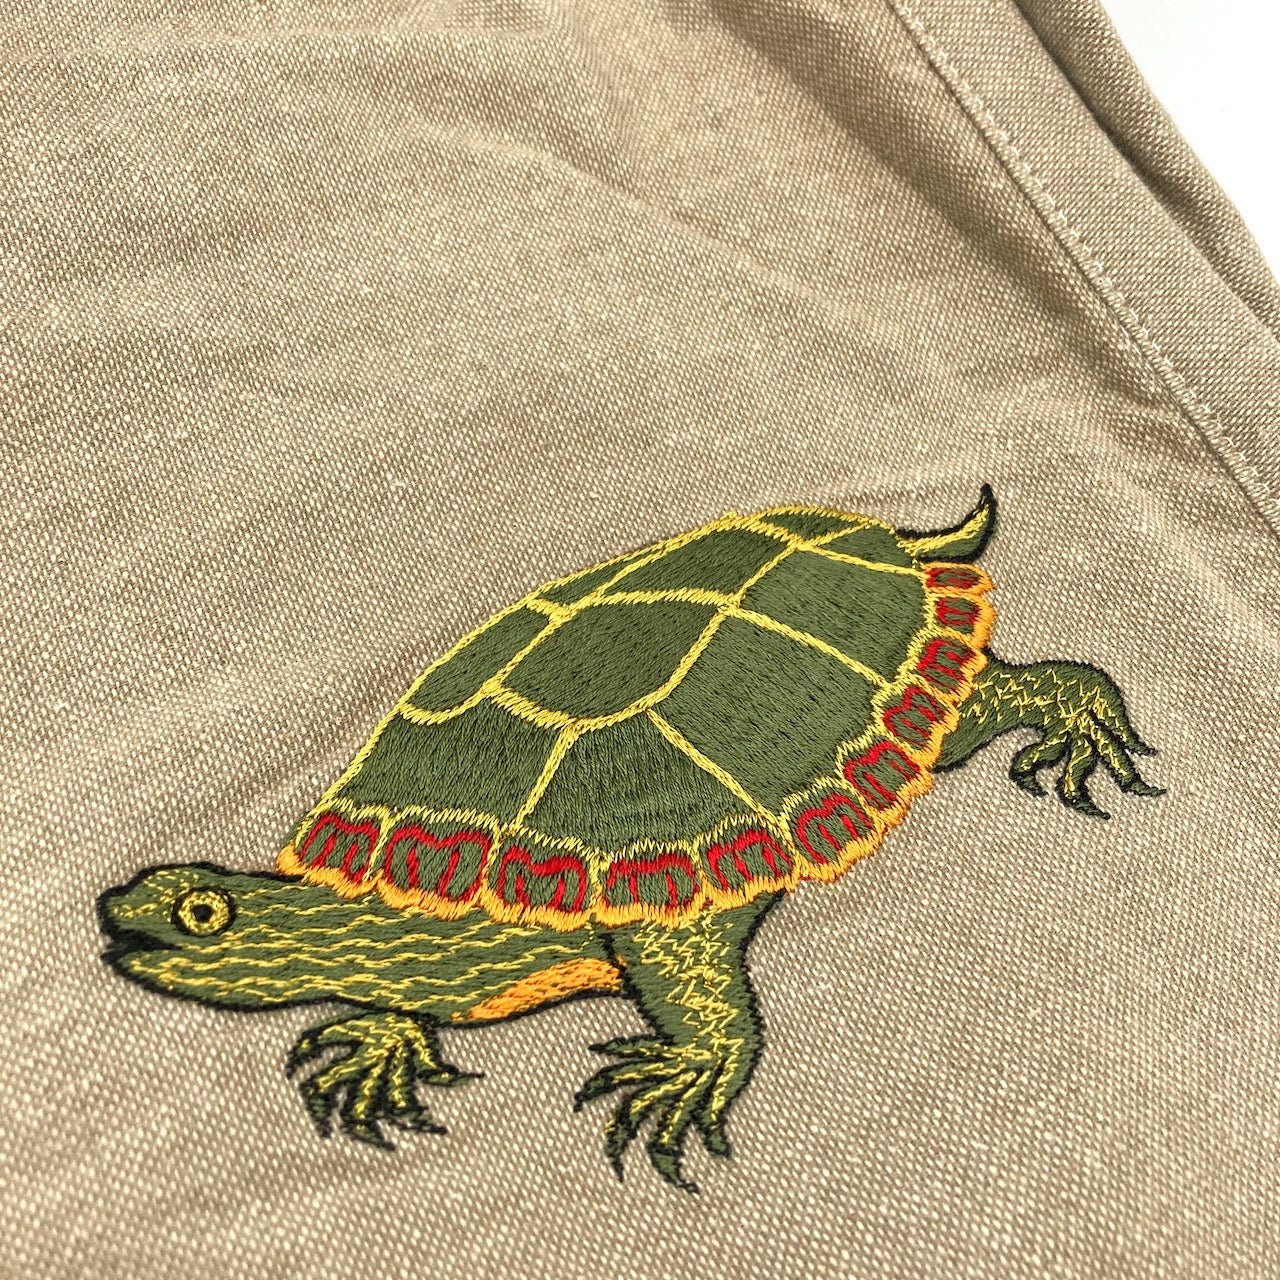 Painted Turtle Field Bag